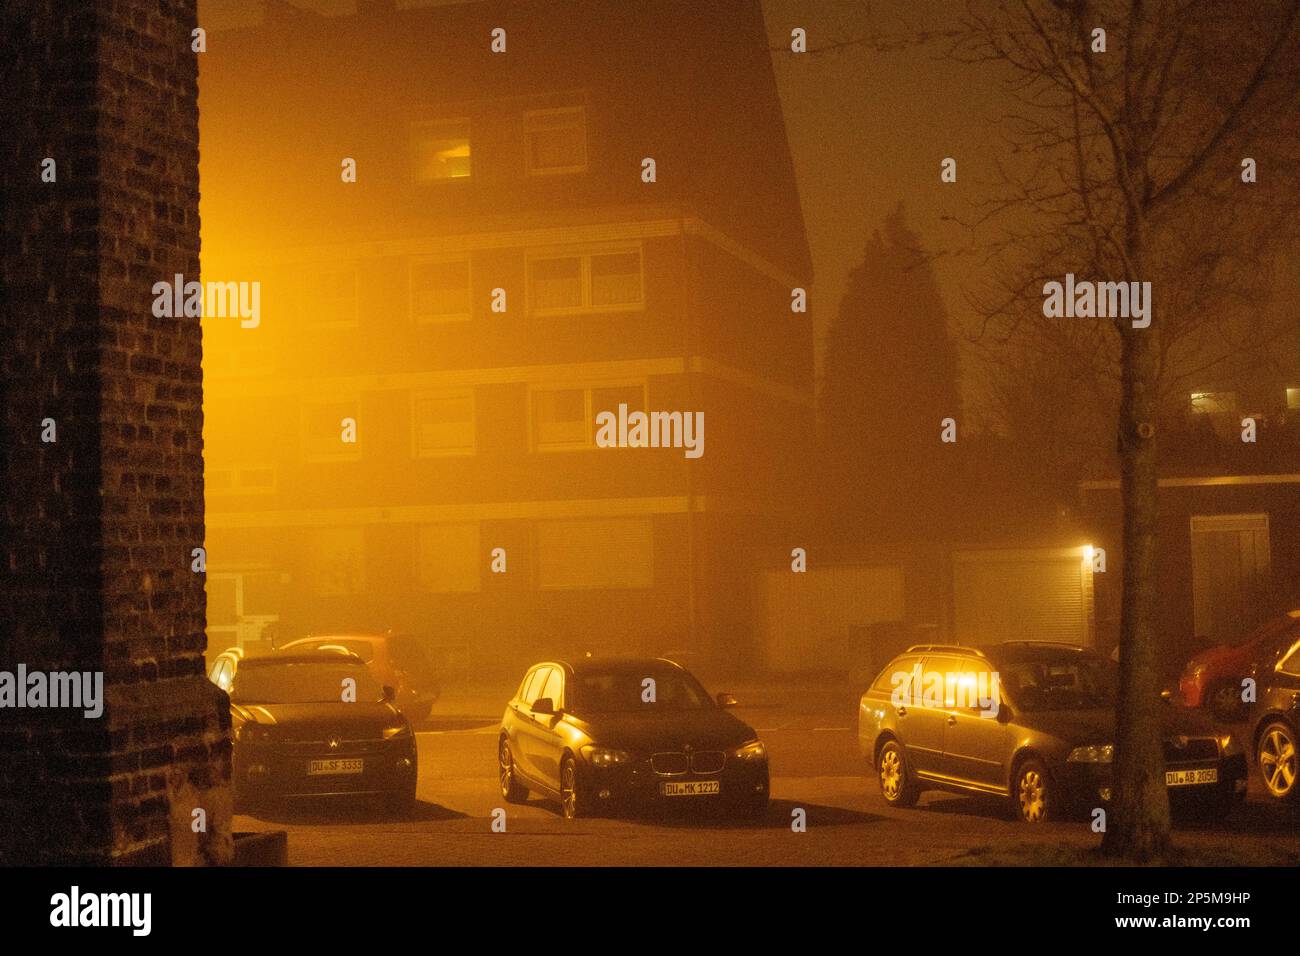 2021 04 03, Duisburg, Allemagne: Trois voitures debout dans un brouillard épais, illuminées du côté Banque D'Images